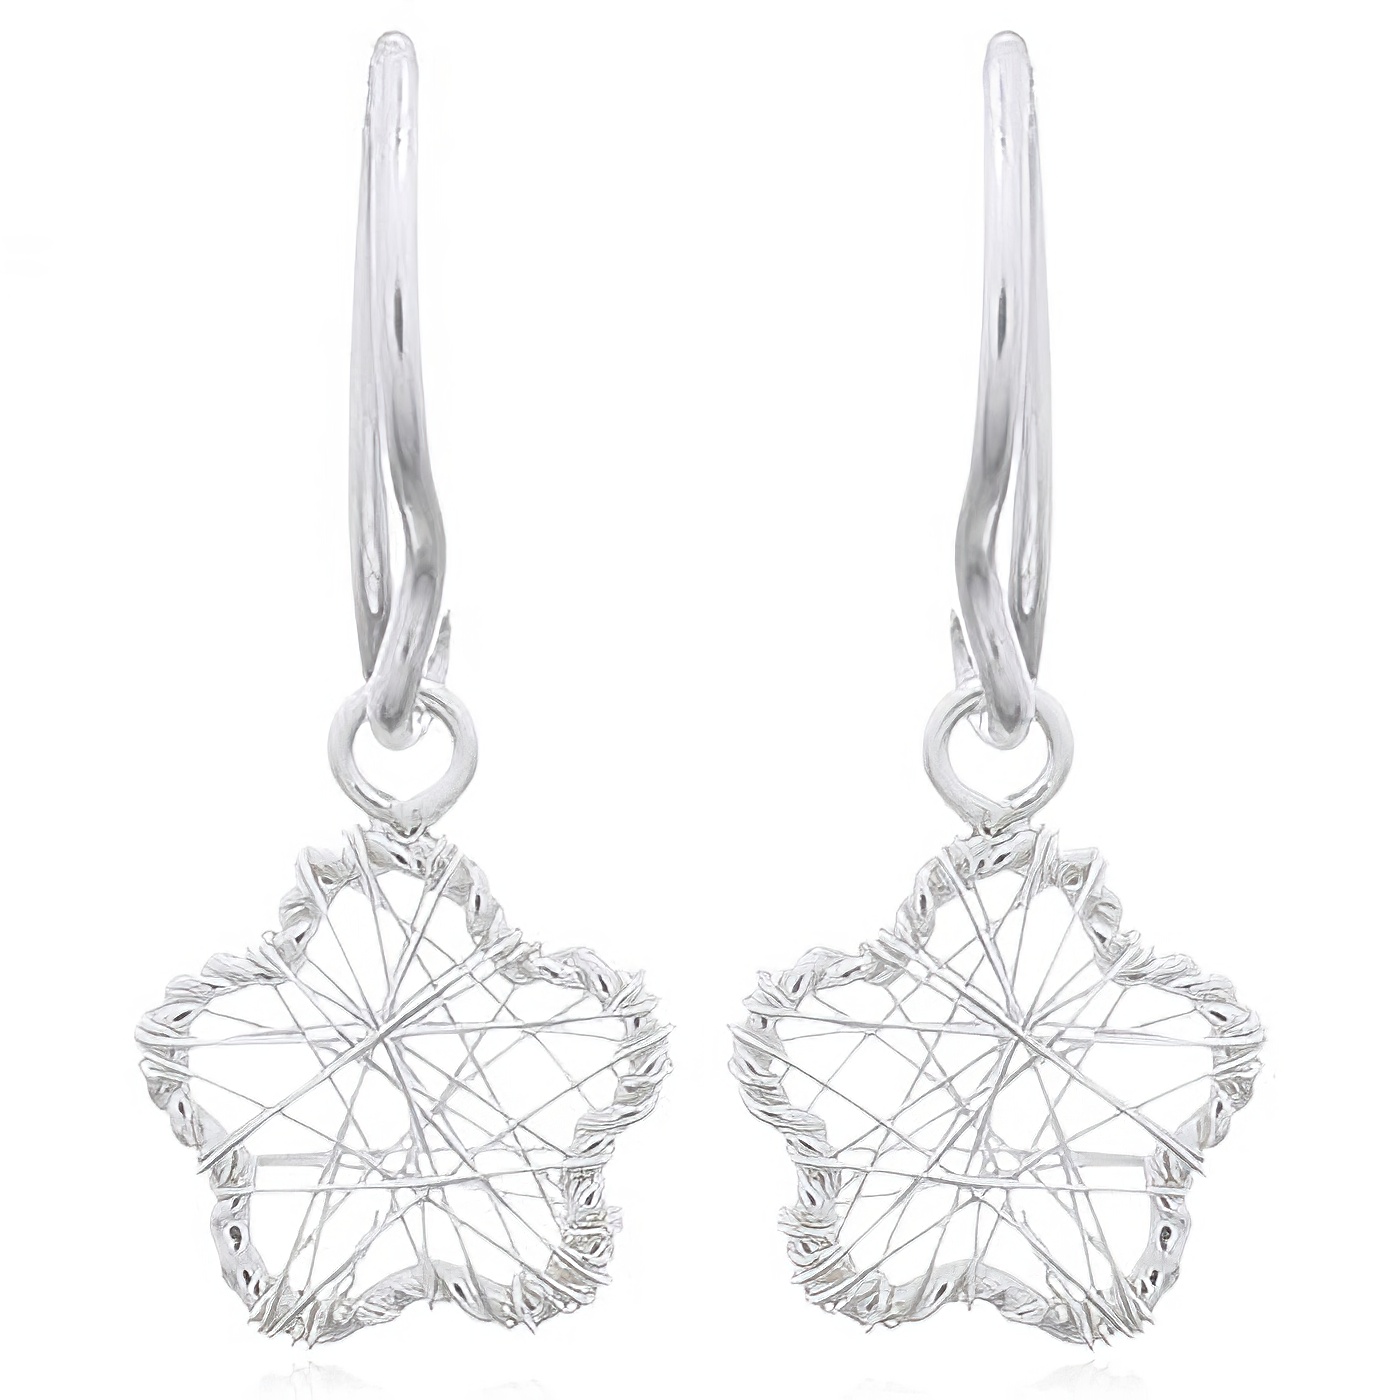 Wire Wrapped Flower Silver 925 Dangle Earrings by BeYindi 